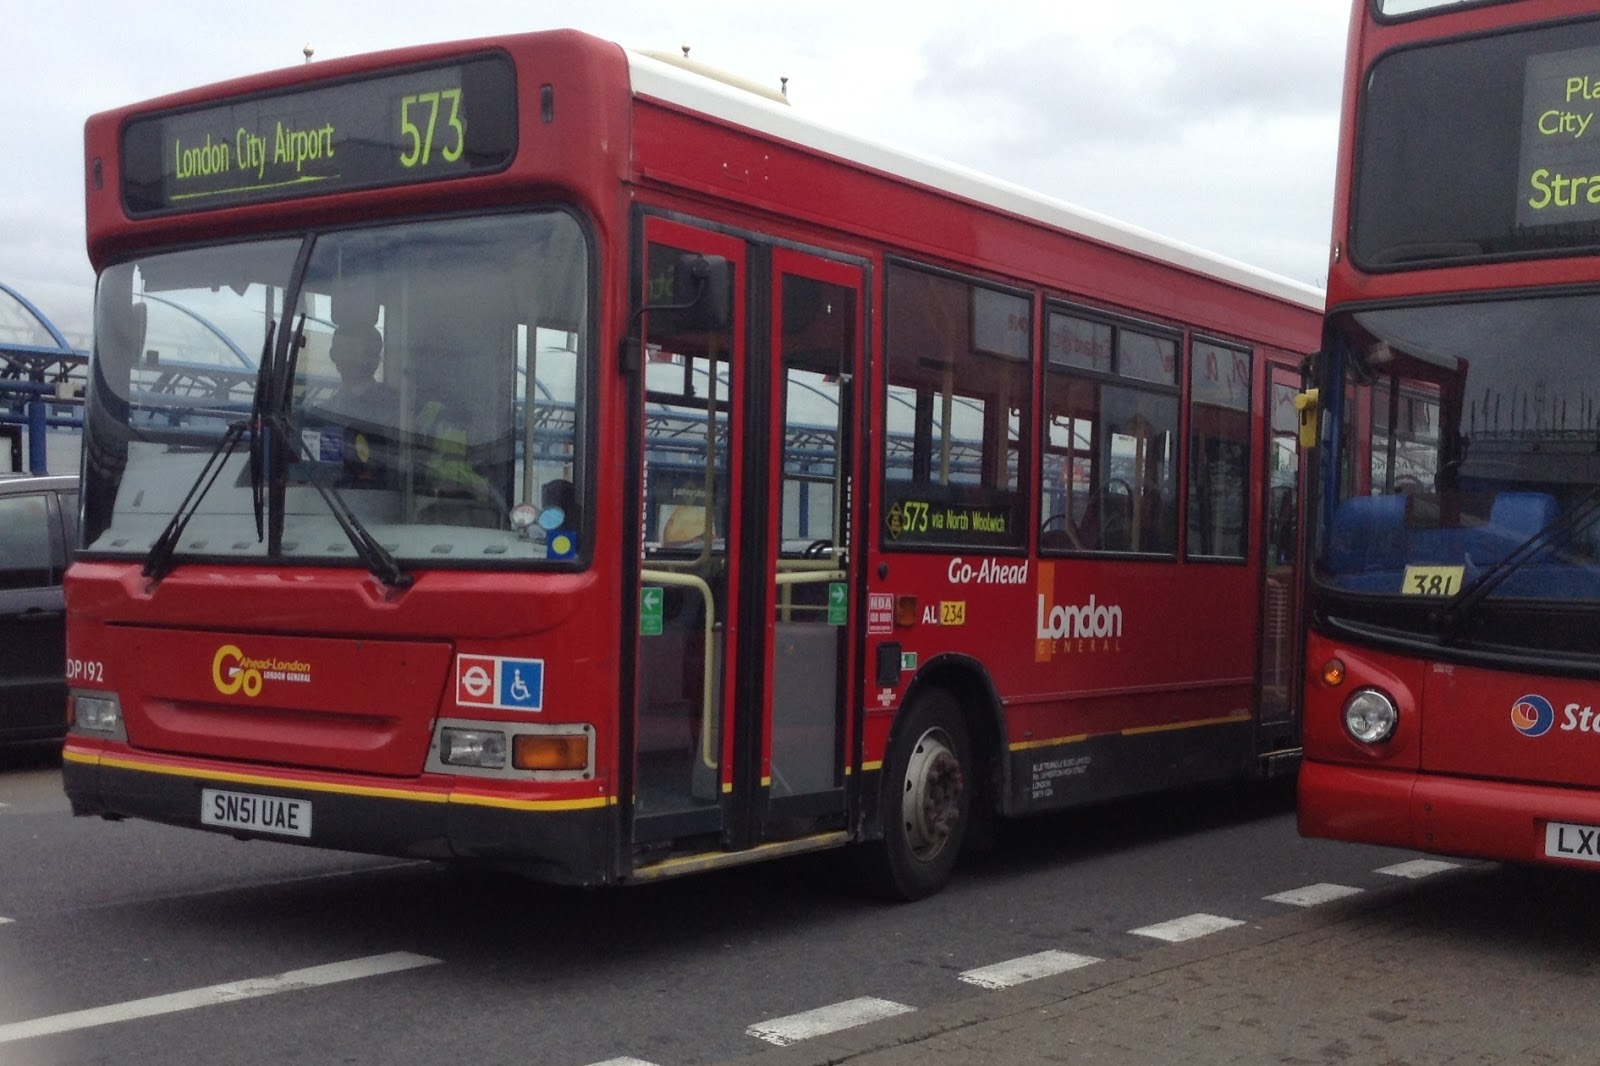 573 bus route